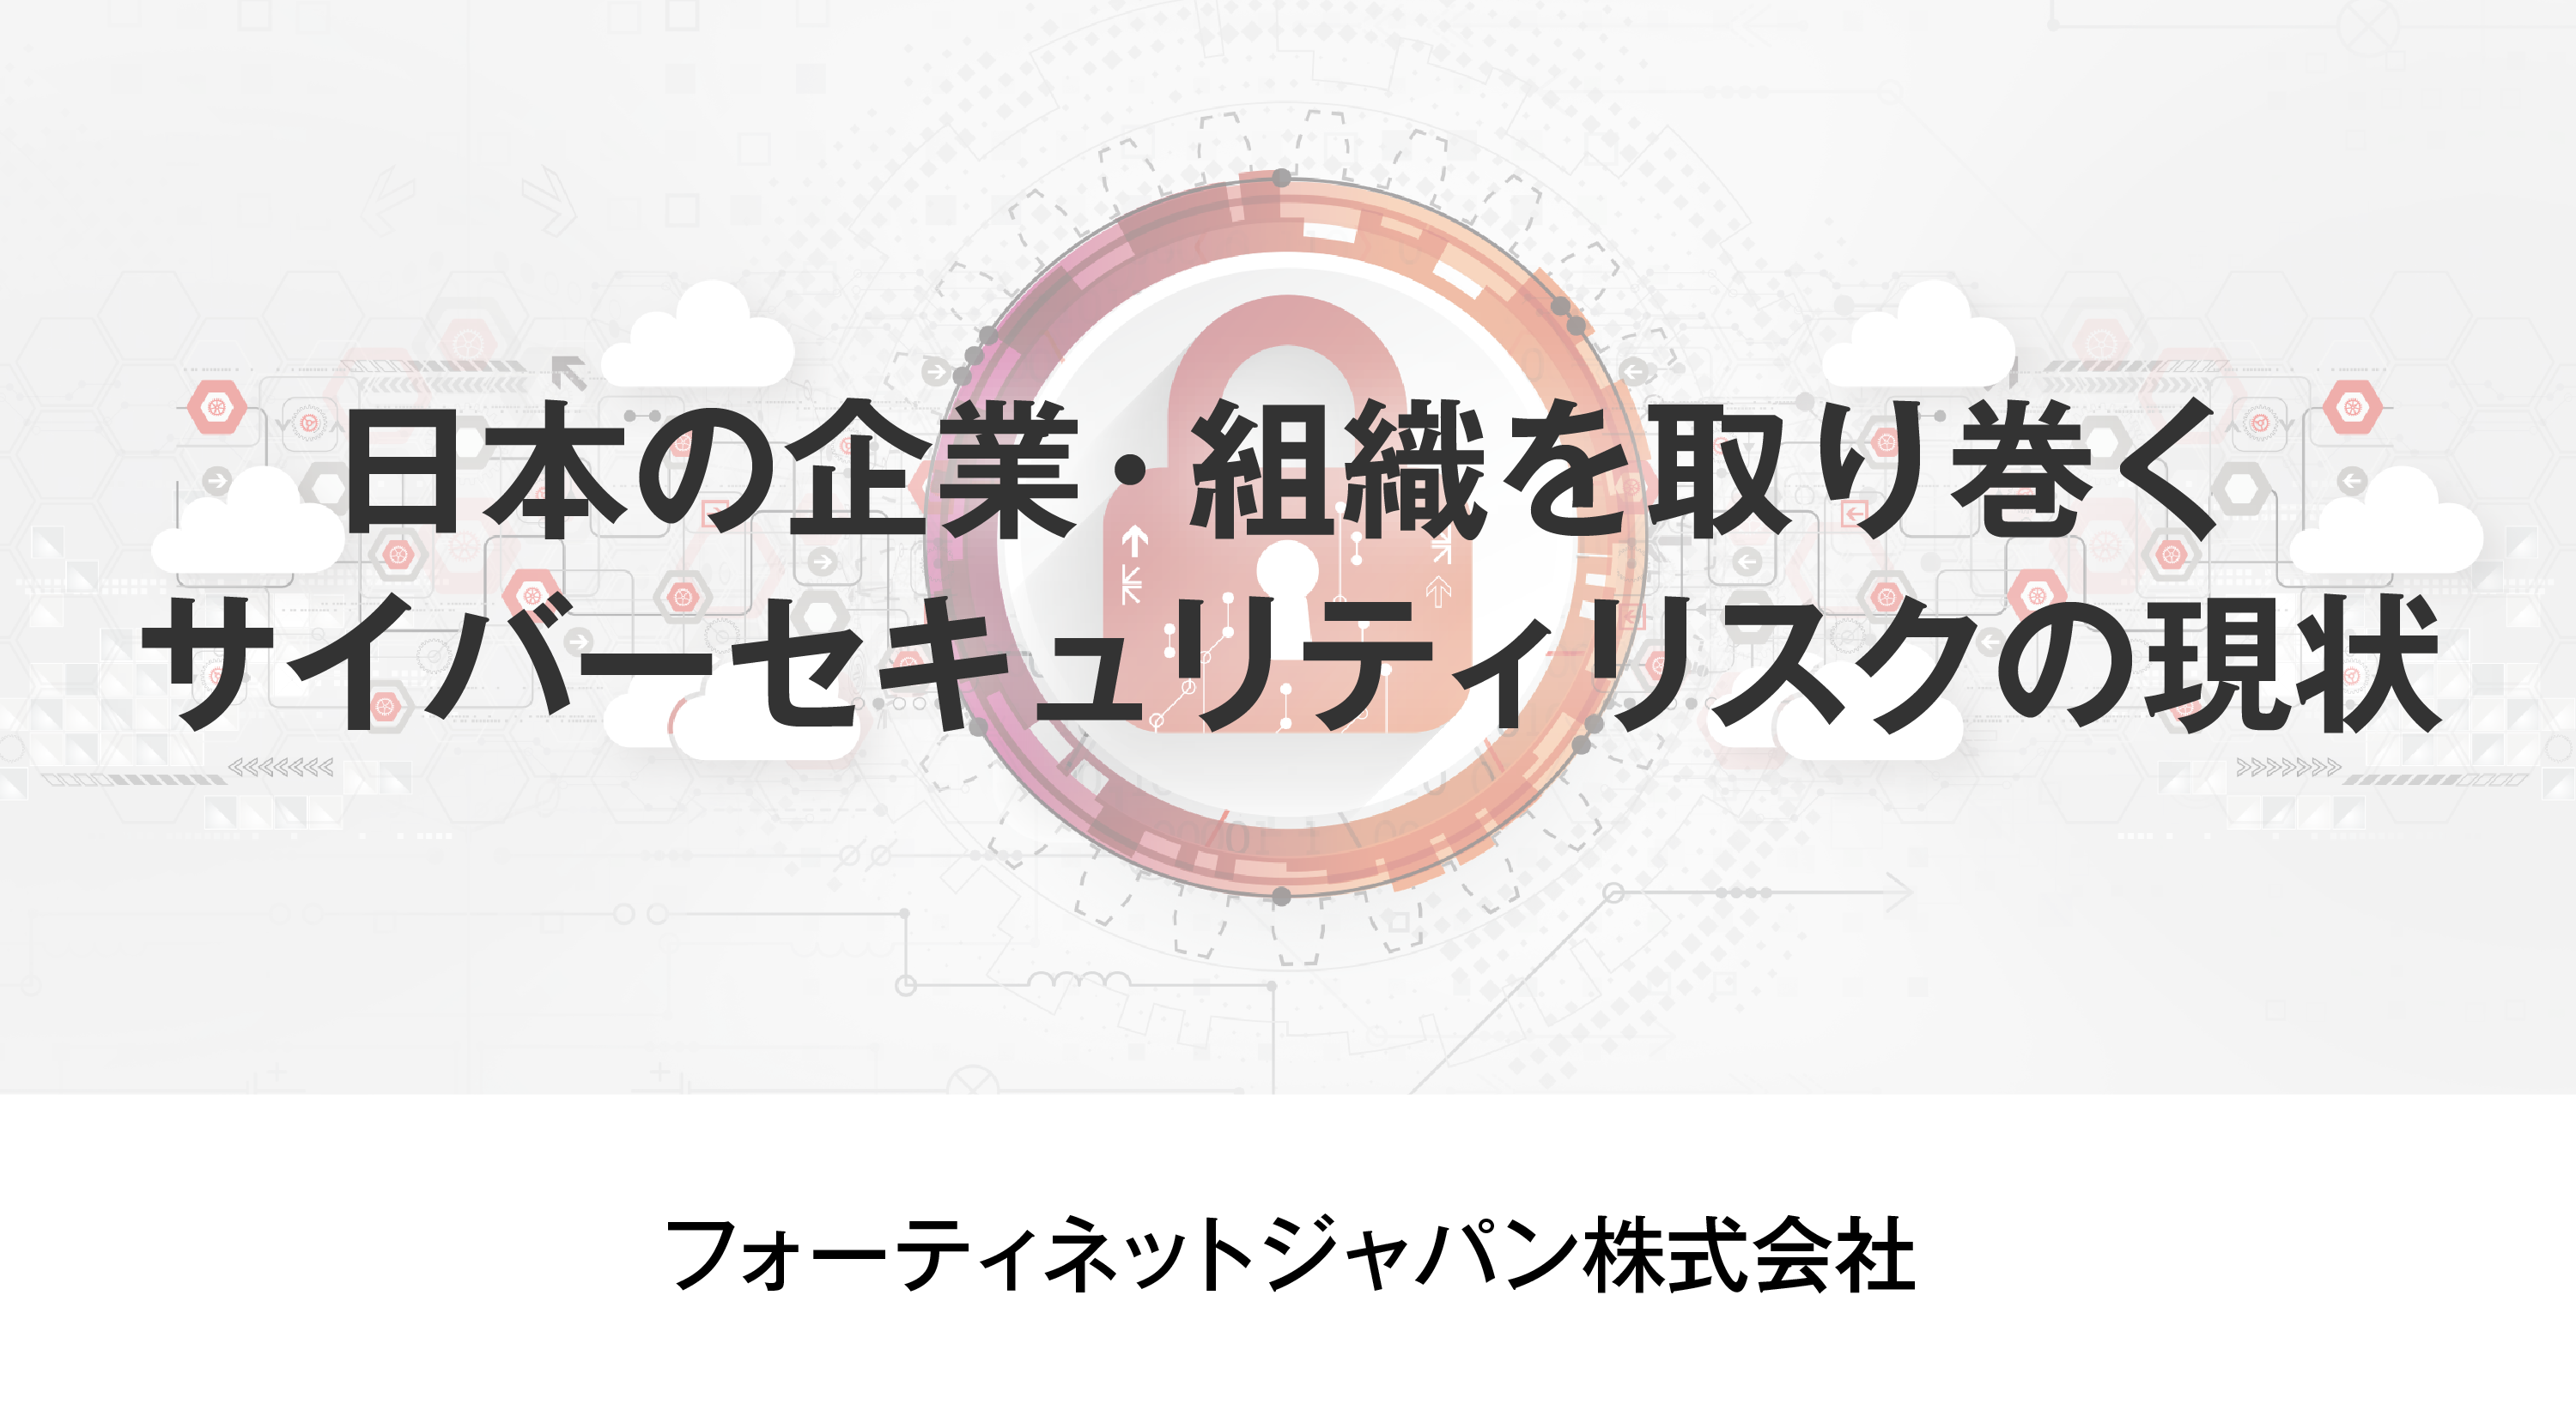 日本の企業・組織を取り巻くサイバーセキュリティリスクの現状